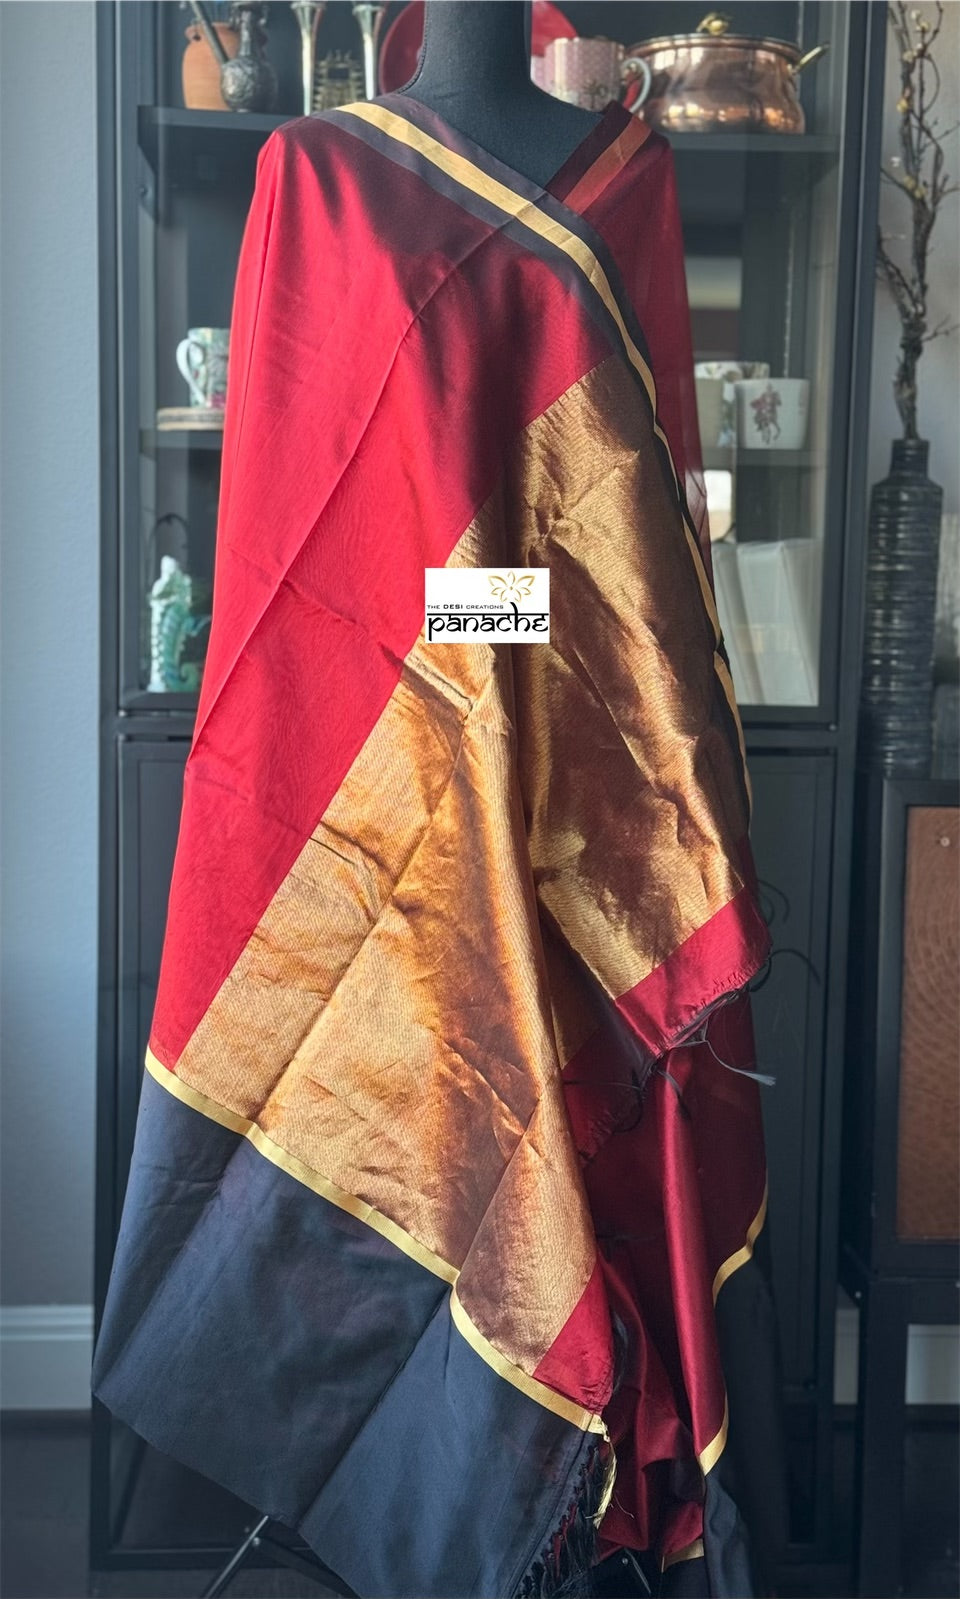 Pure Chanderi Pattu Mashru Silk - Red Black Gold Zari Striped woven